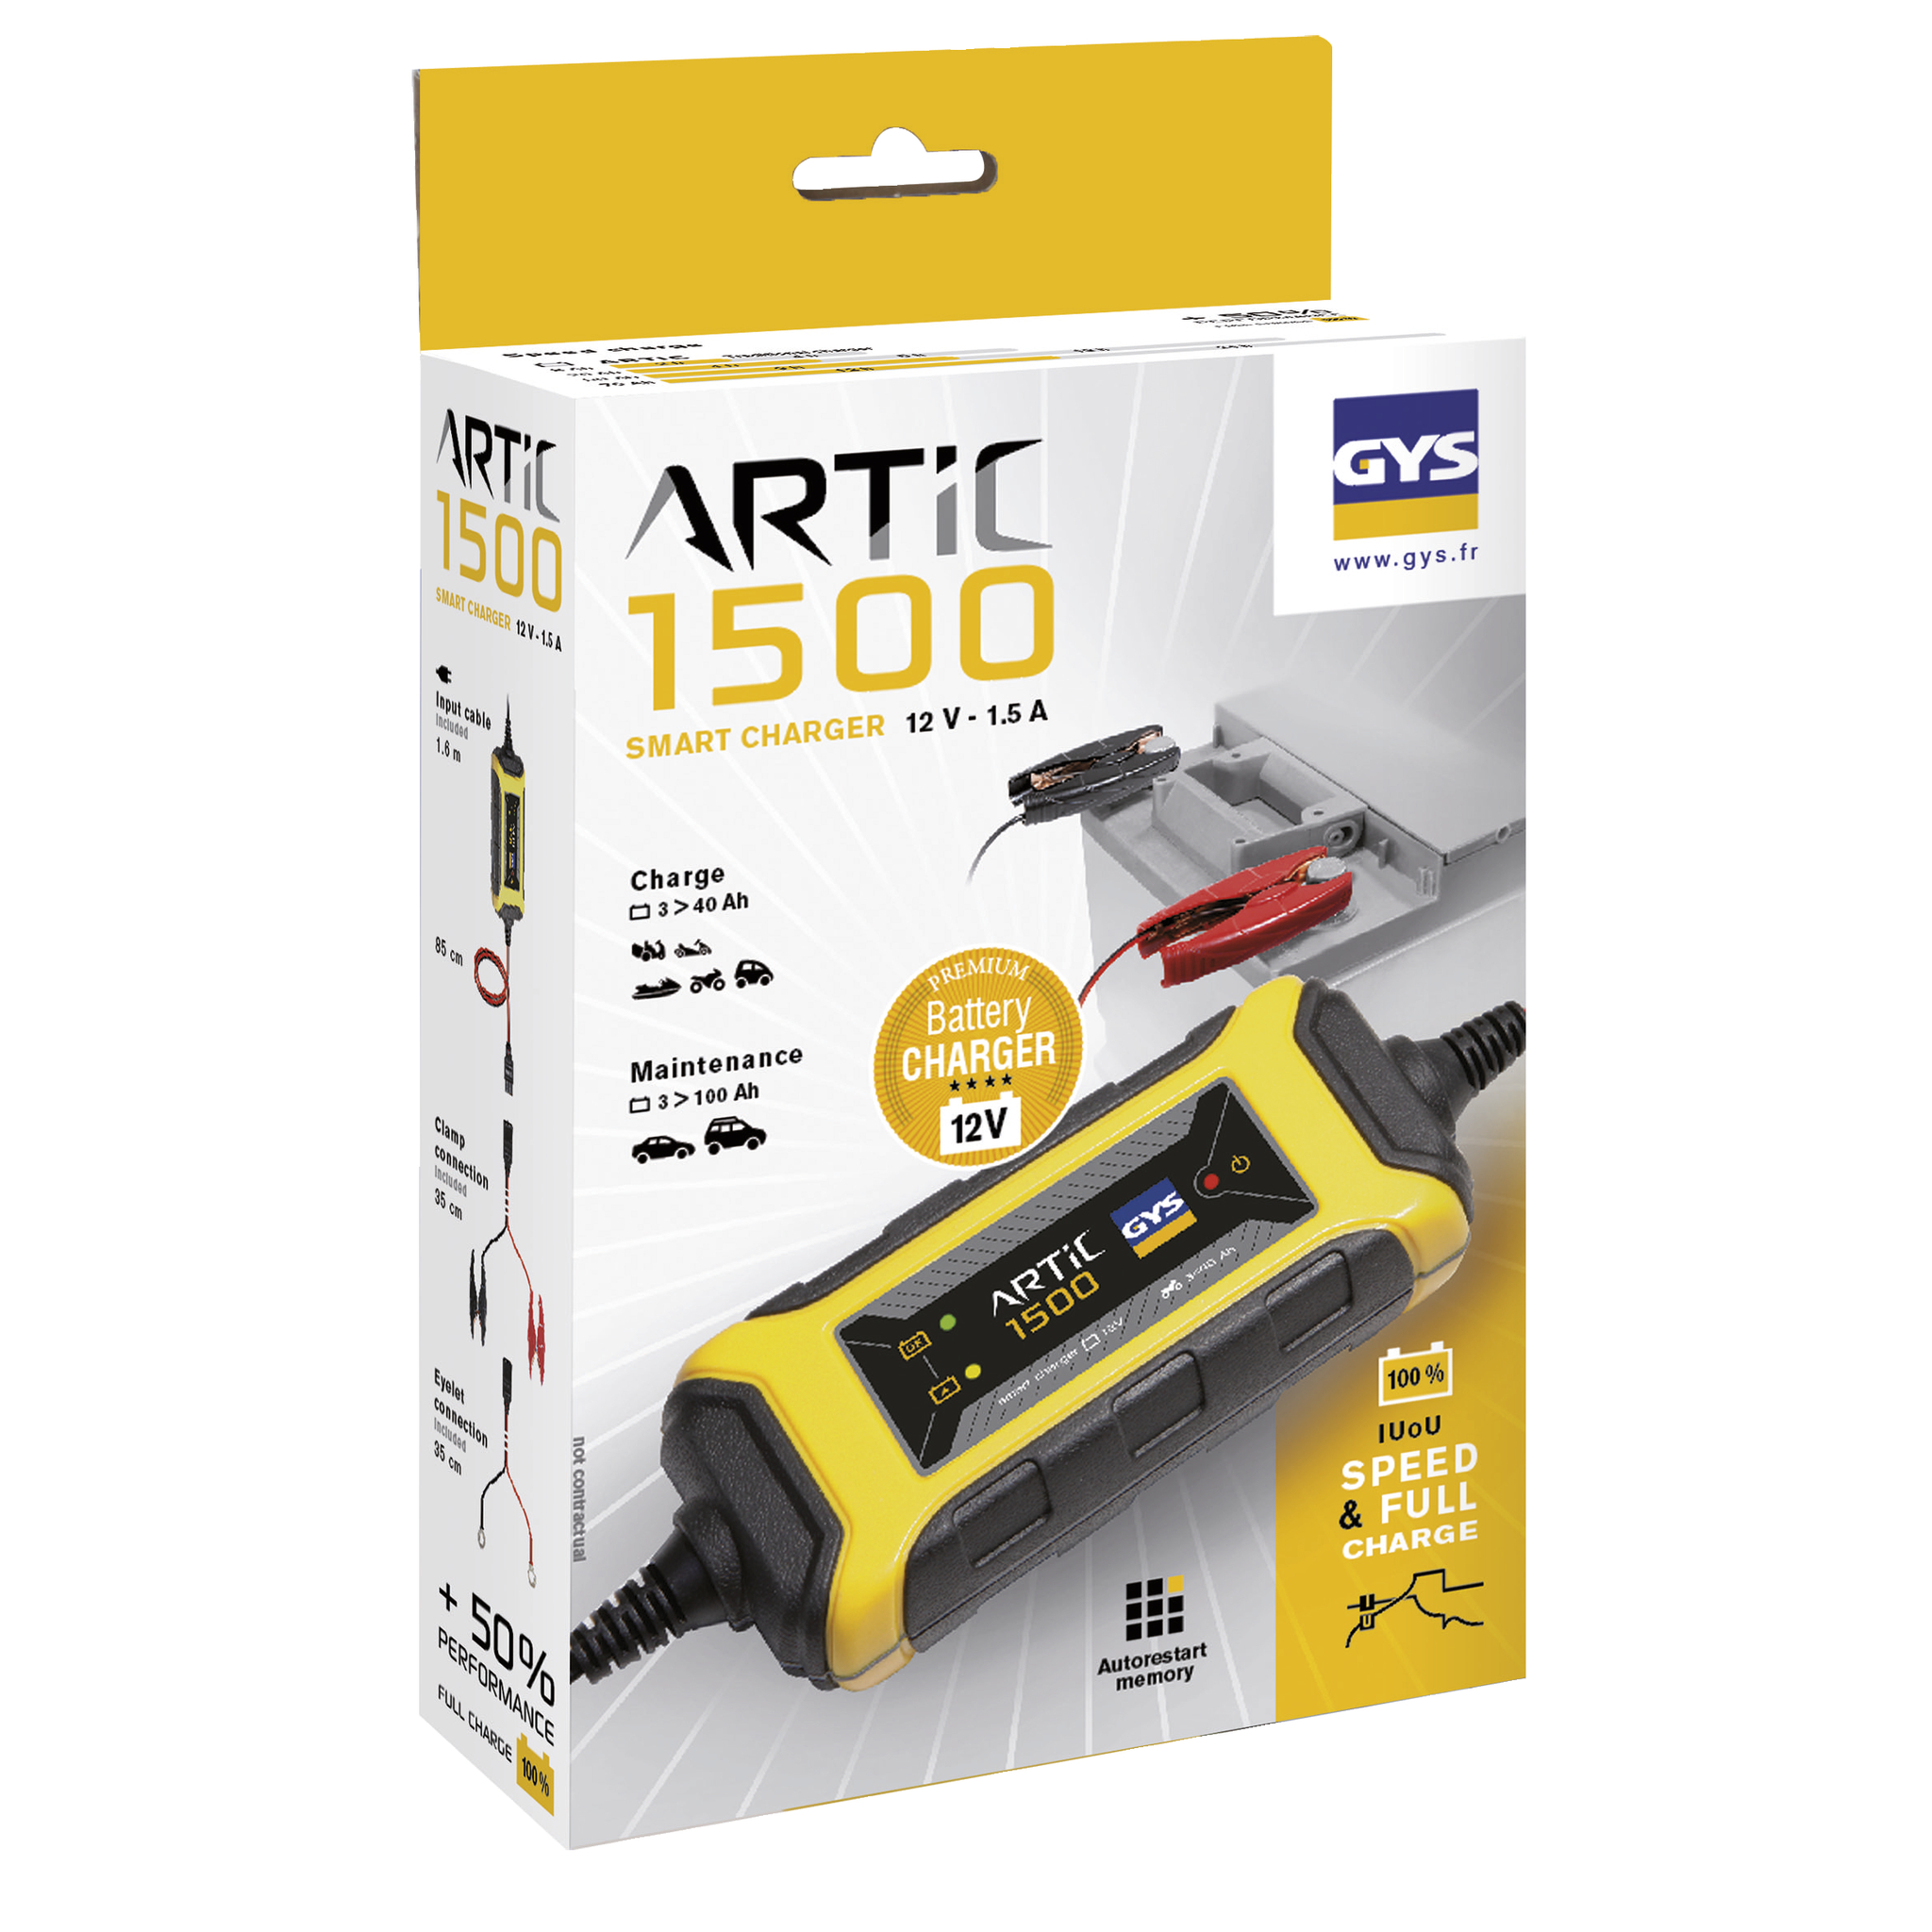 GYS Batterieladegerät Artic 1500